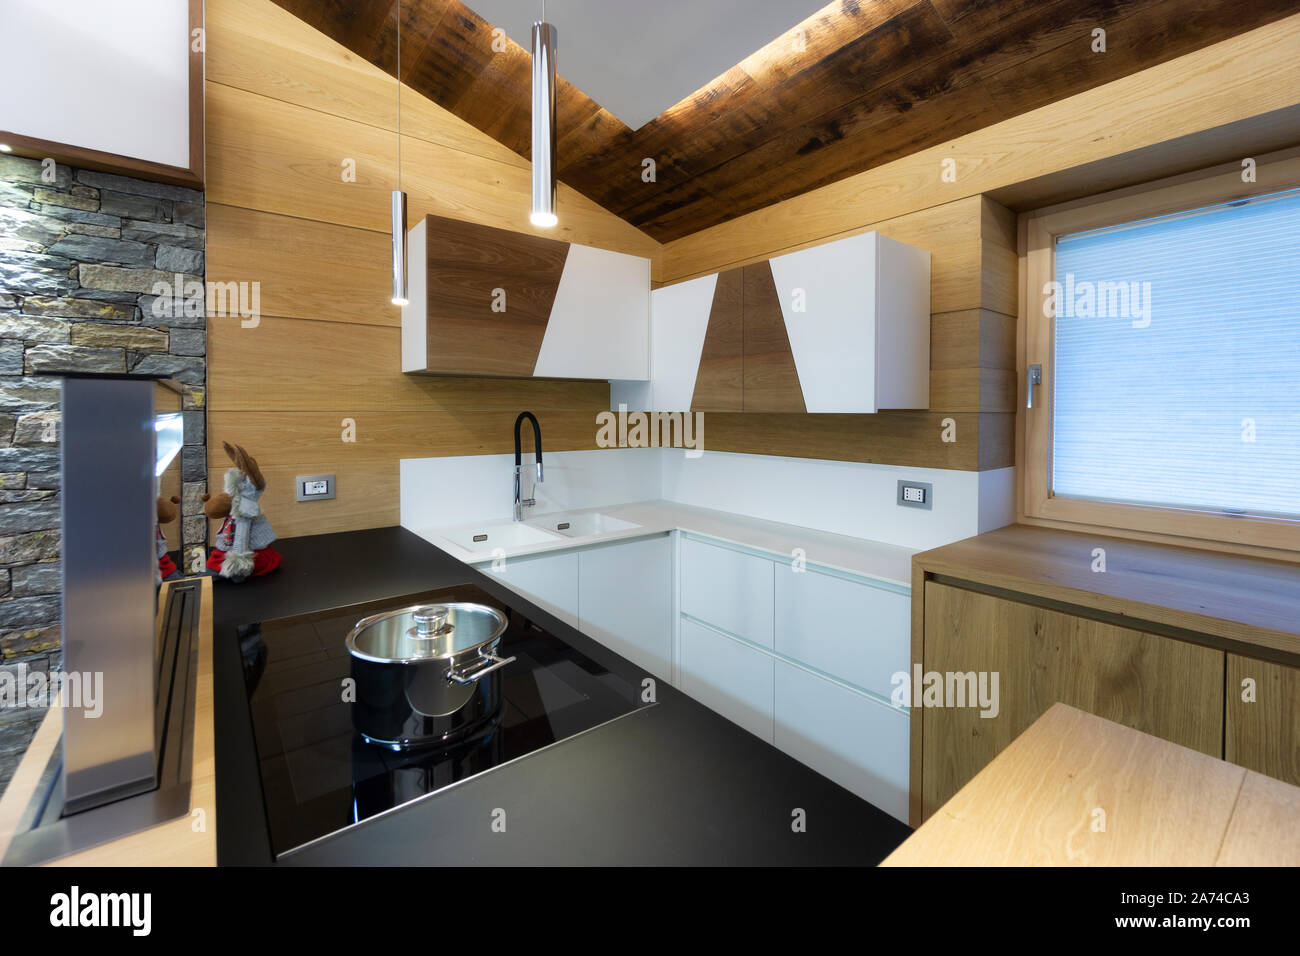 Intérieur de cuisine en bois dans un style moderne Banque D'Images